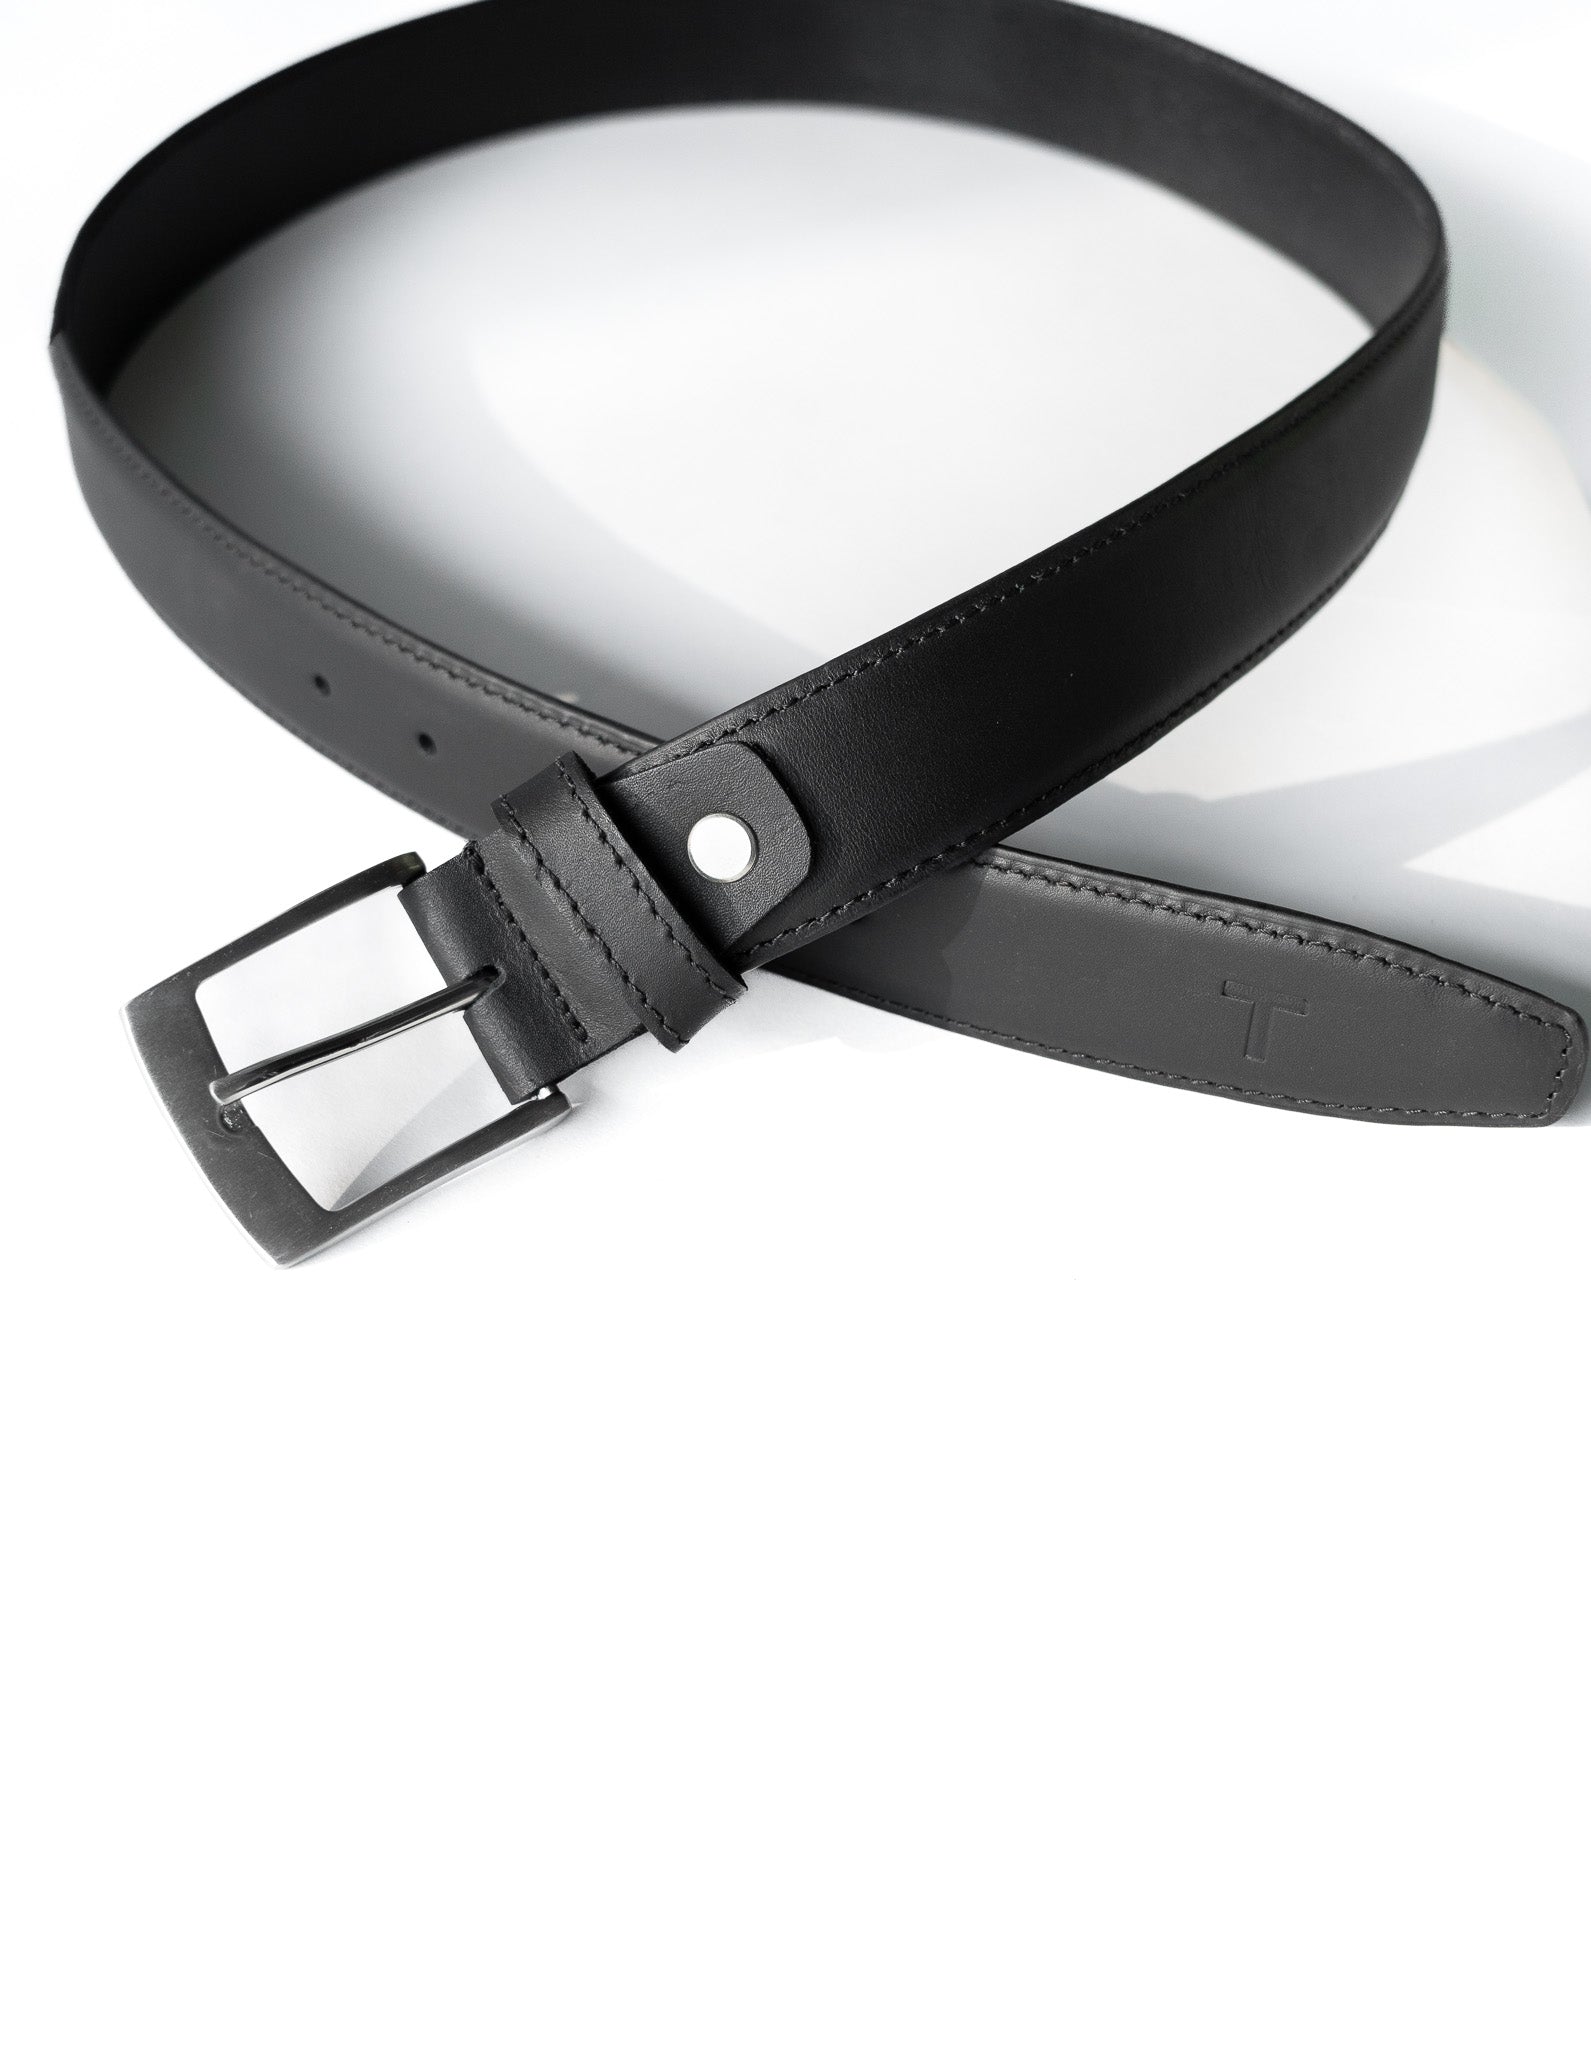 Men's Black Leather Belt